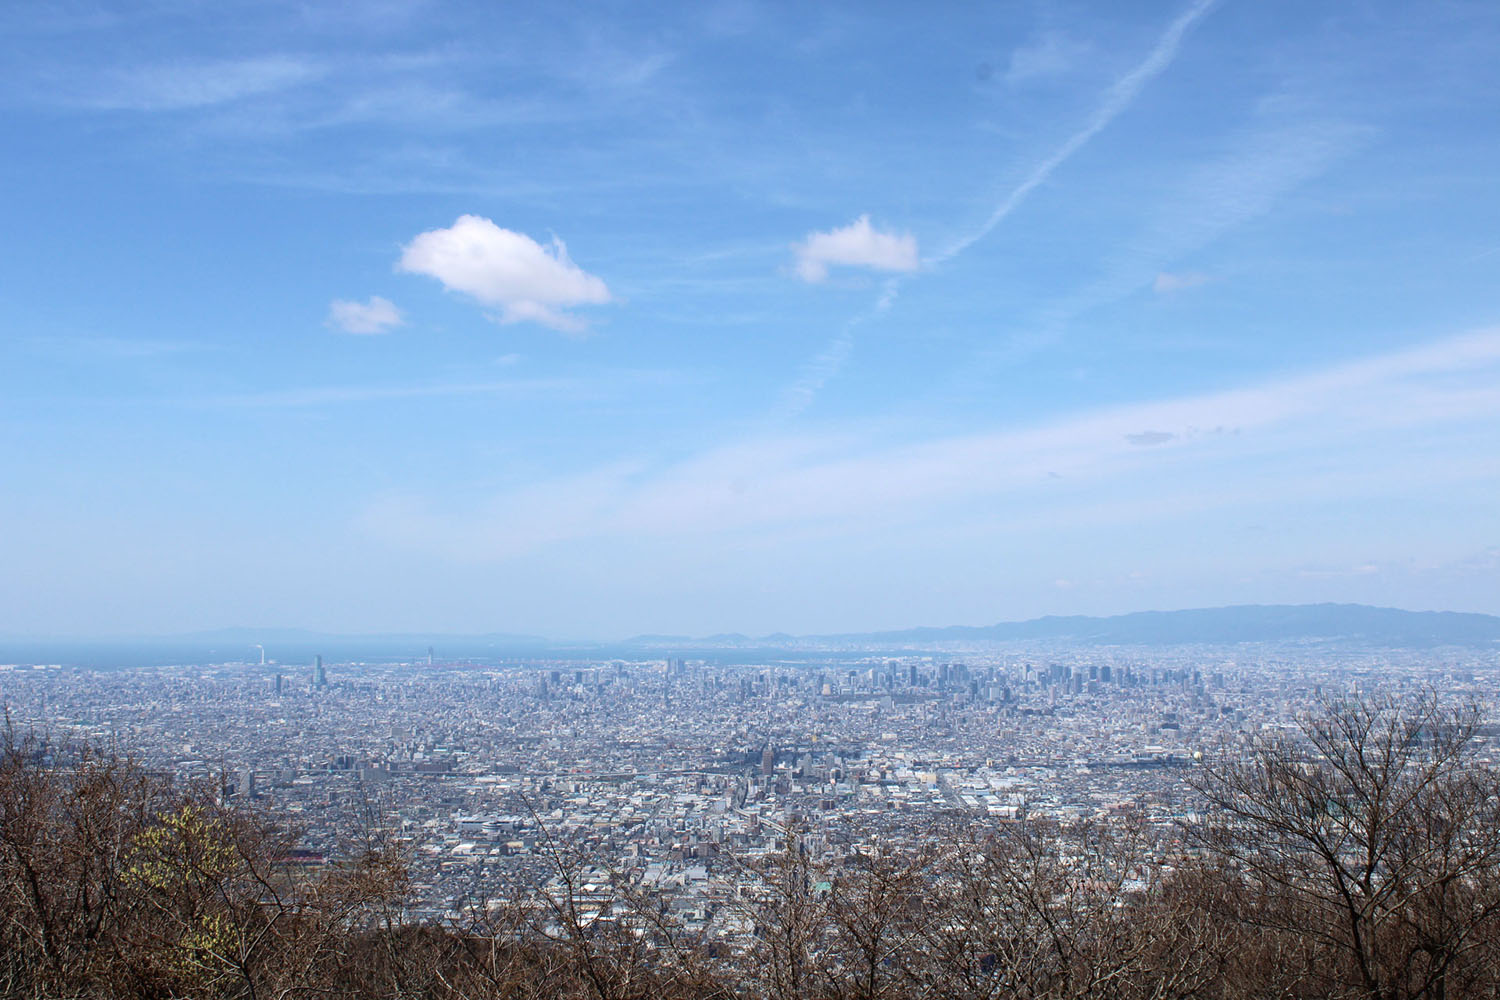 第13話で舞と浩太が眺めた、生駒山からの景色。舞の目には東大阪がキラキラして見えた。